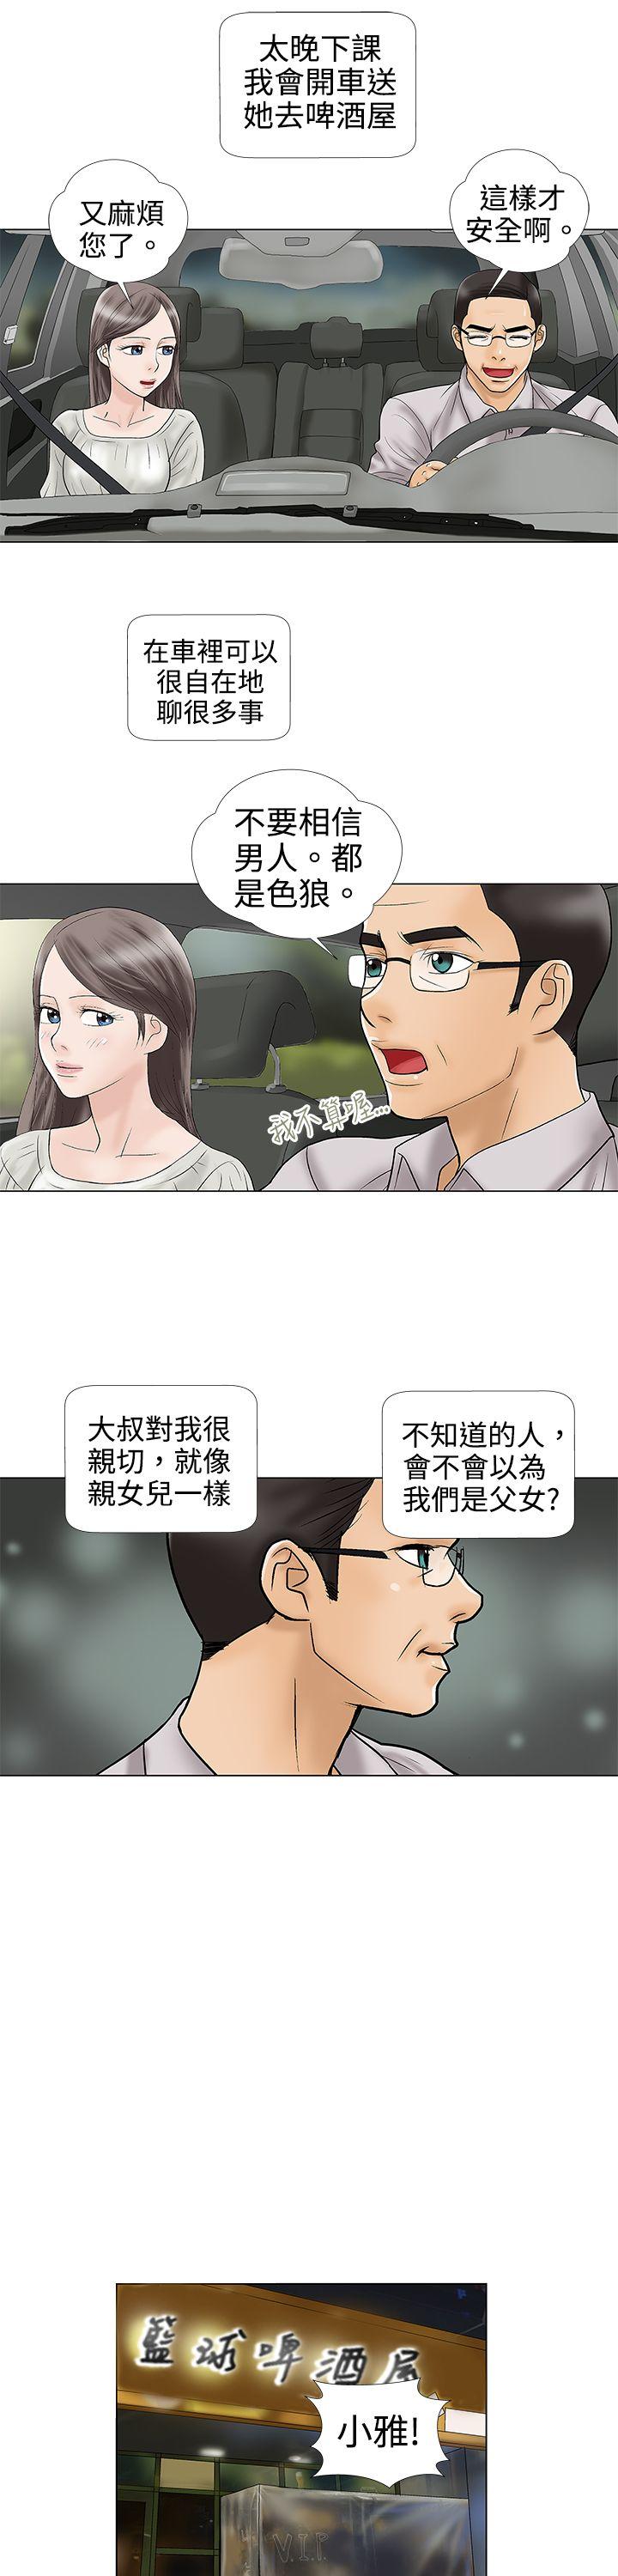 危险的爱(完结)  第4话 漫画图片4.jpg